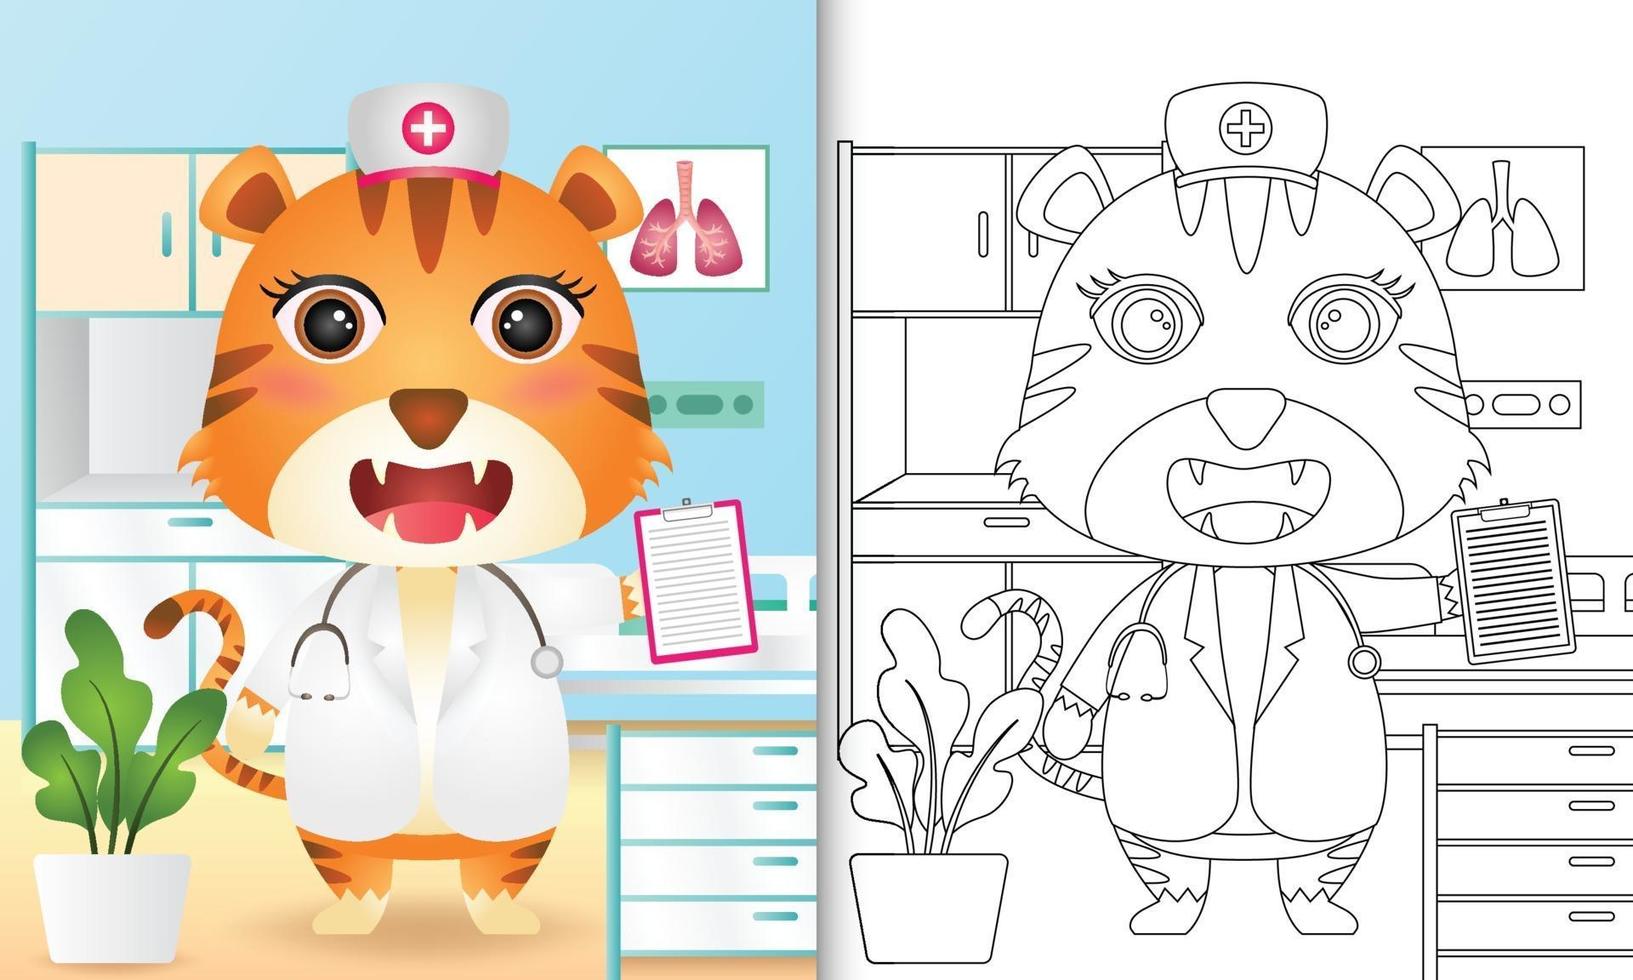 målarbok för barn med en söt tiger sjuksköterska karaktär illustration vektor